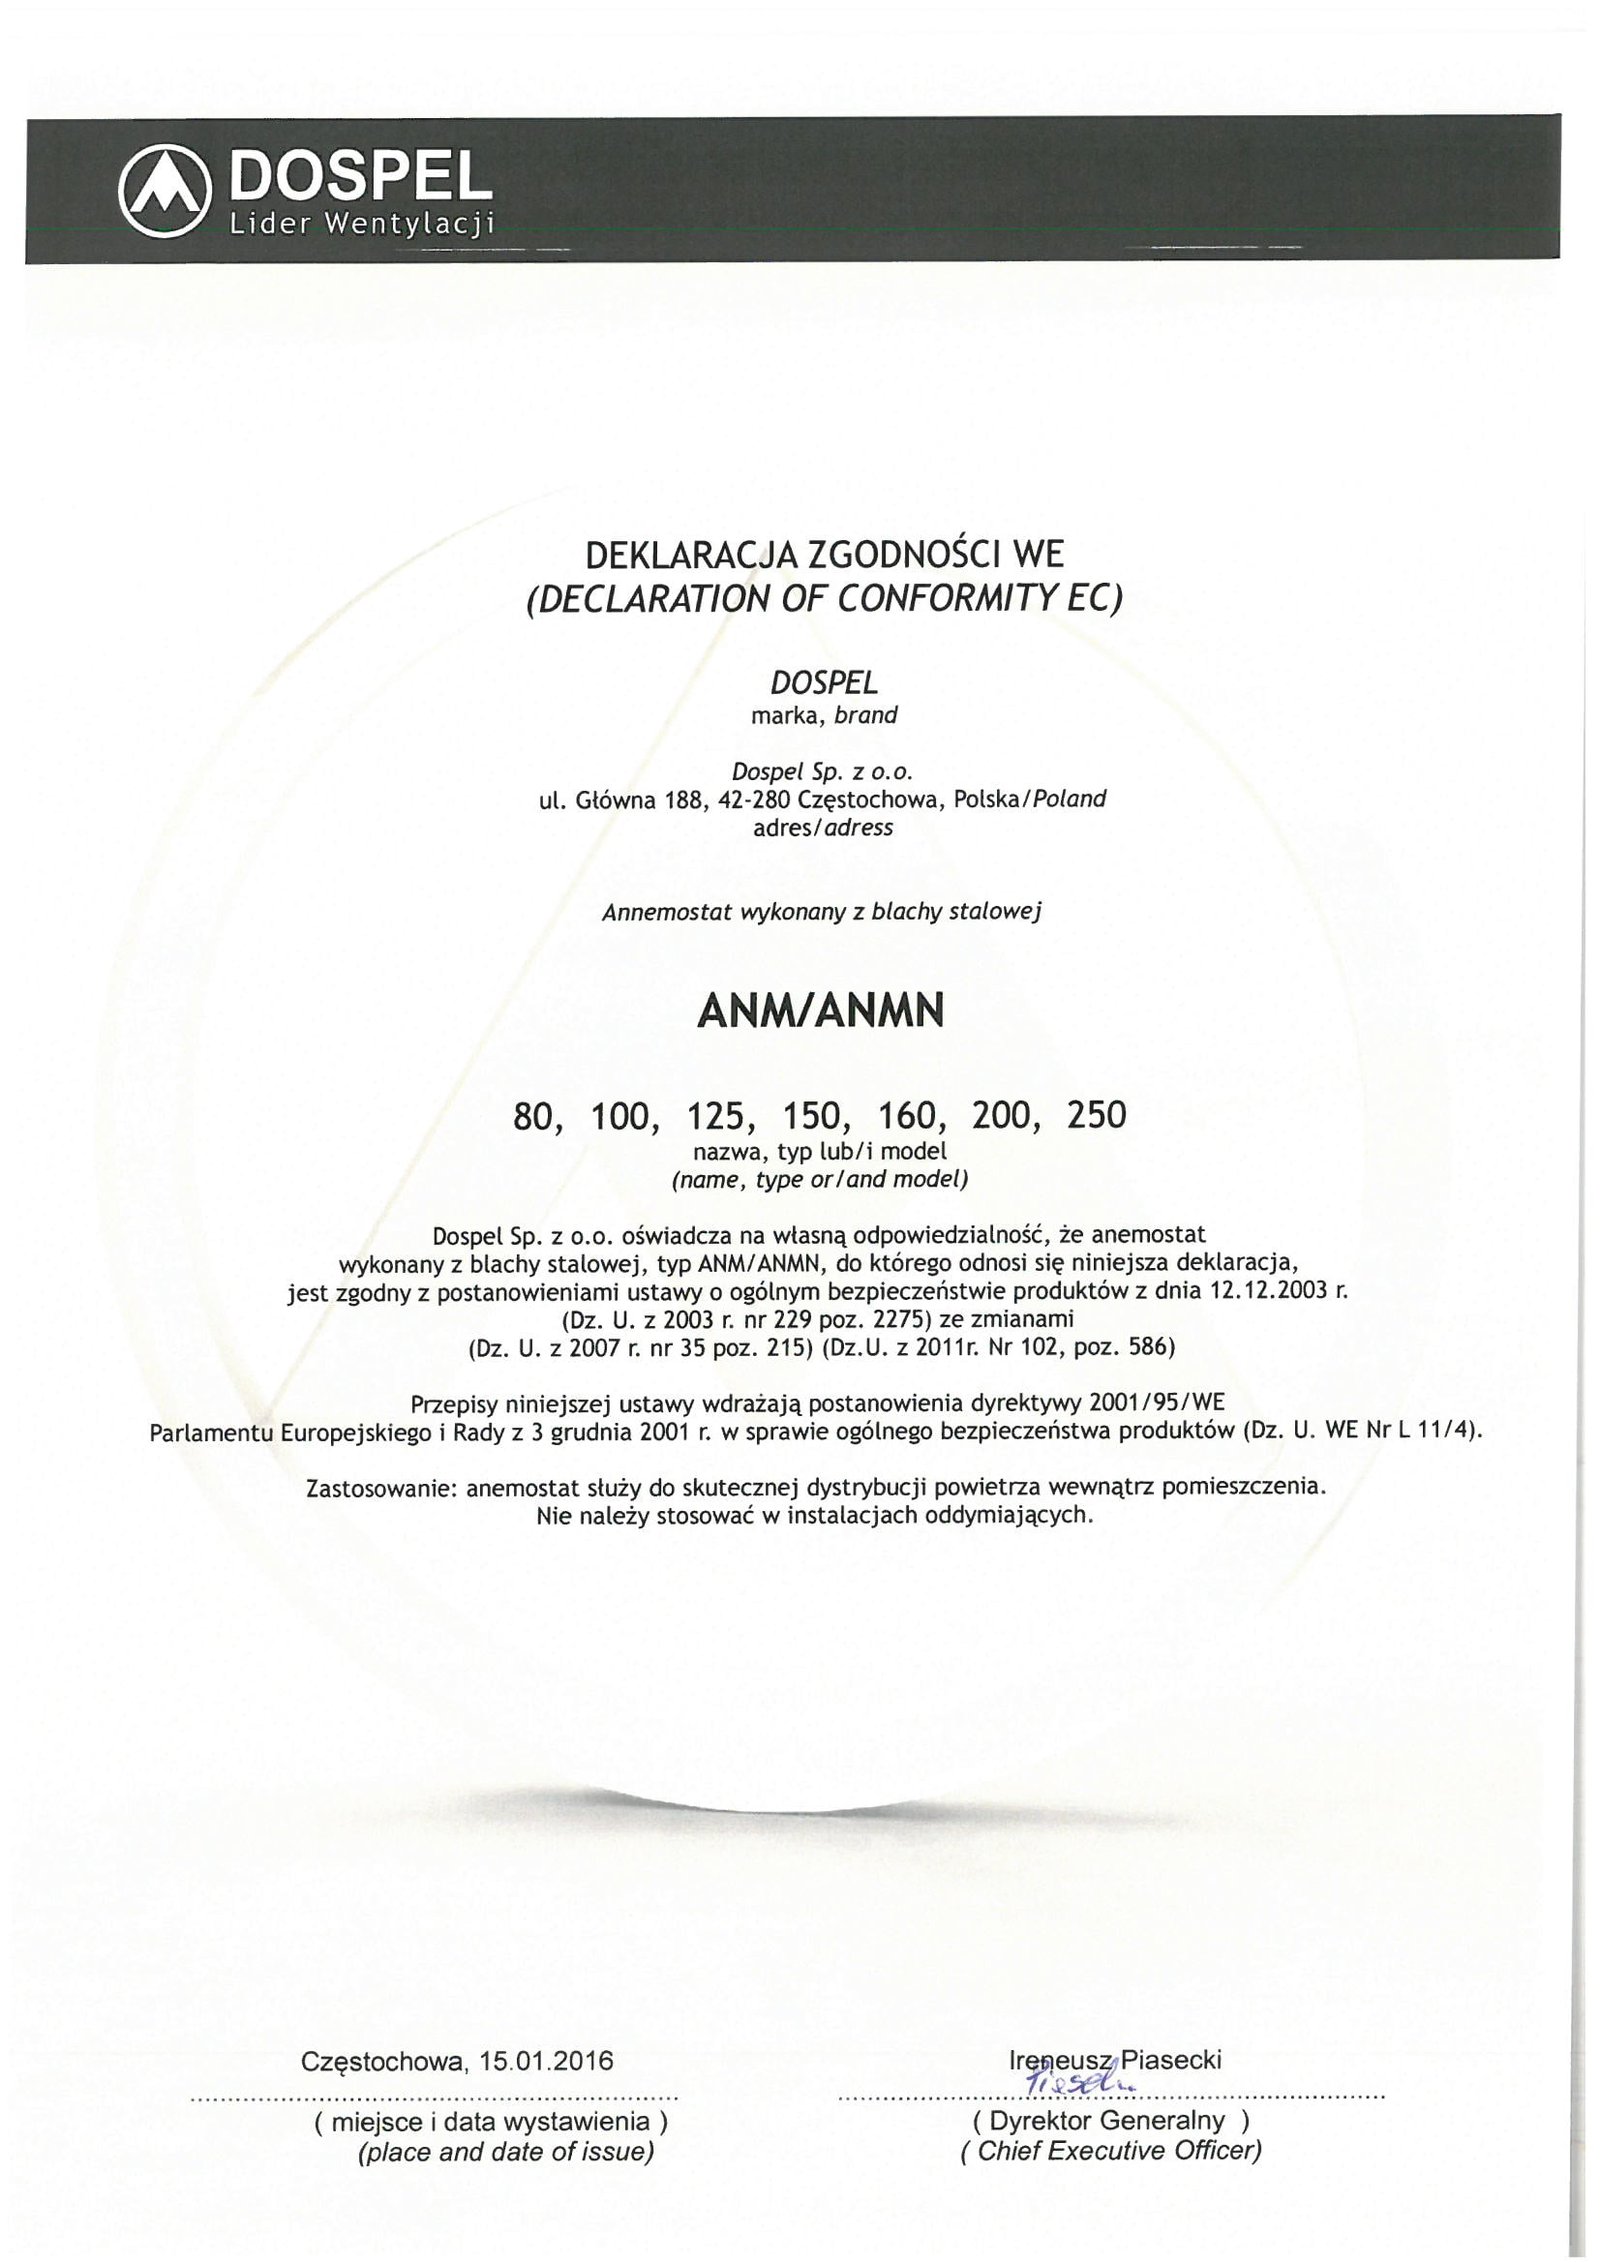 Anemostat, certyfikat, deklaracja zgodności, producent wentylacji, Dospel